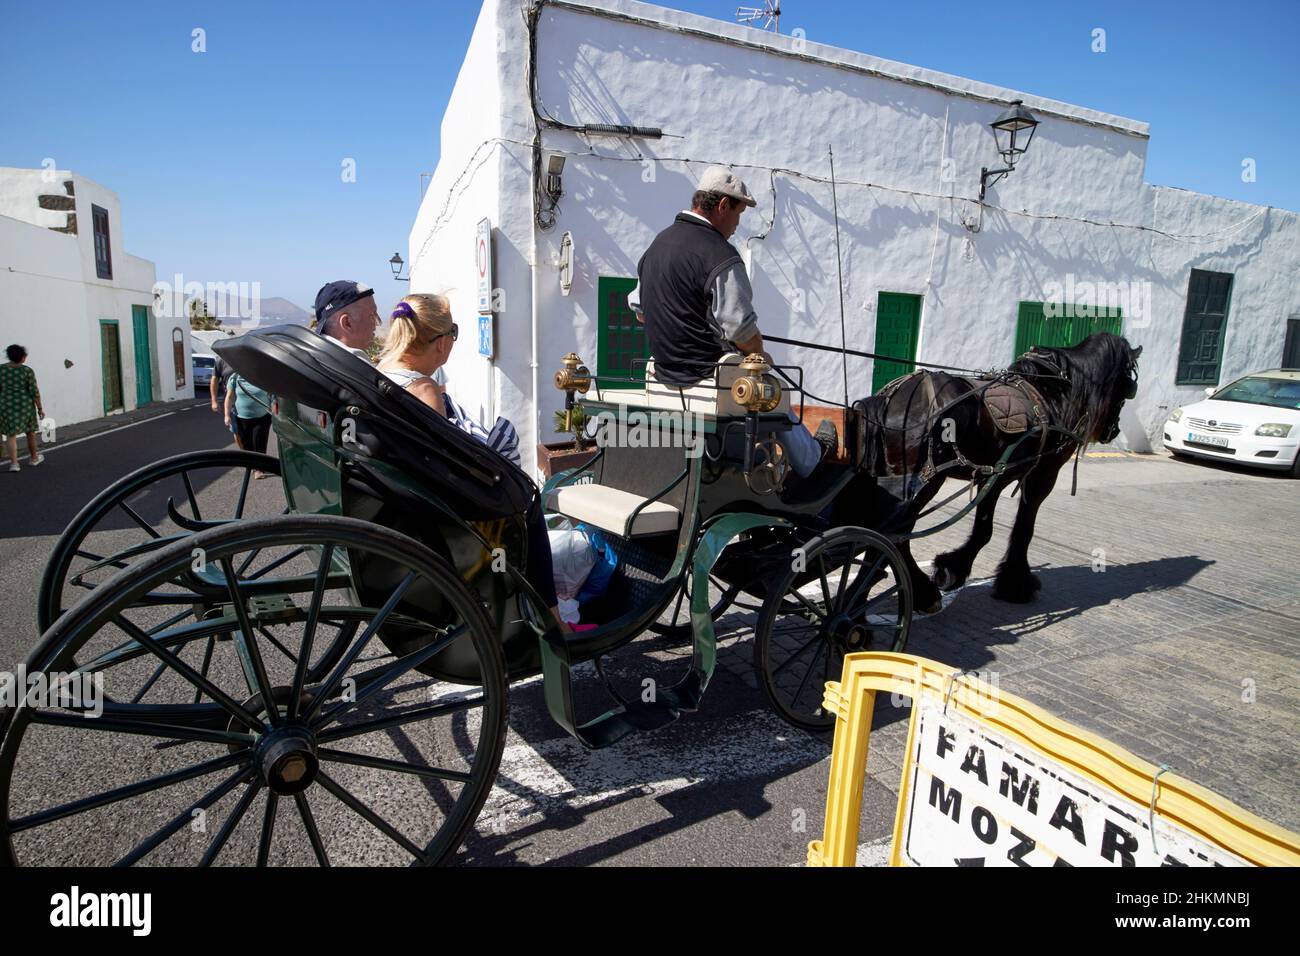 Pferdekutschenfahrten für Touristen am Markttag Teguise Lanzarote Kanarische Inseln Spanien Stockfoto